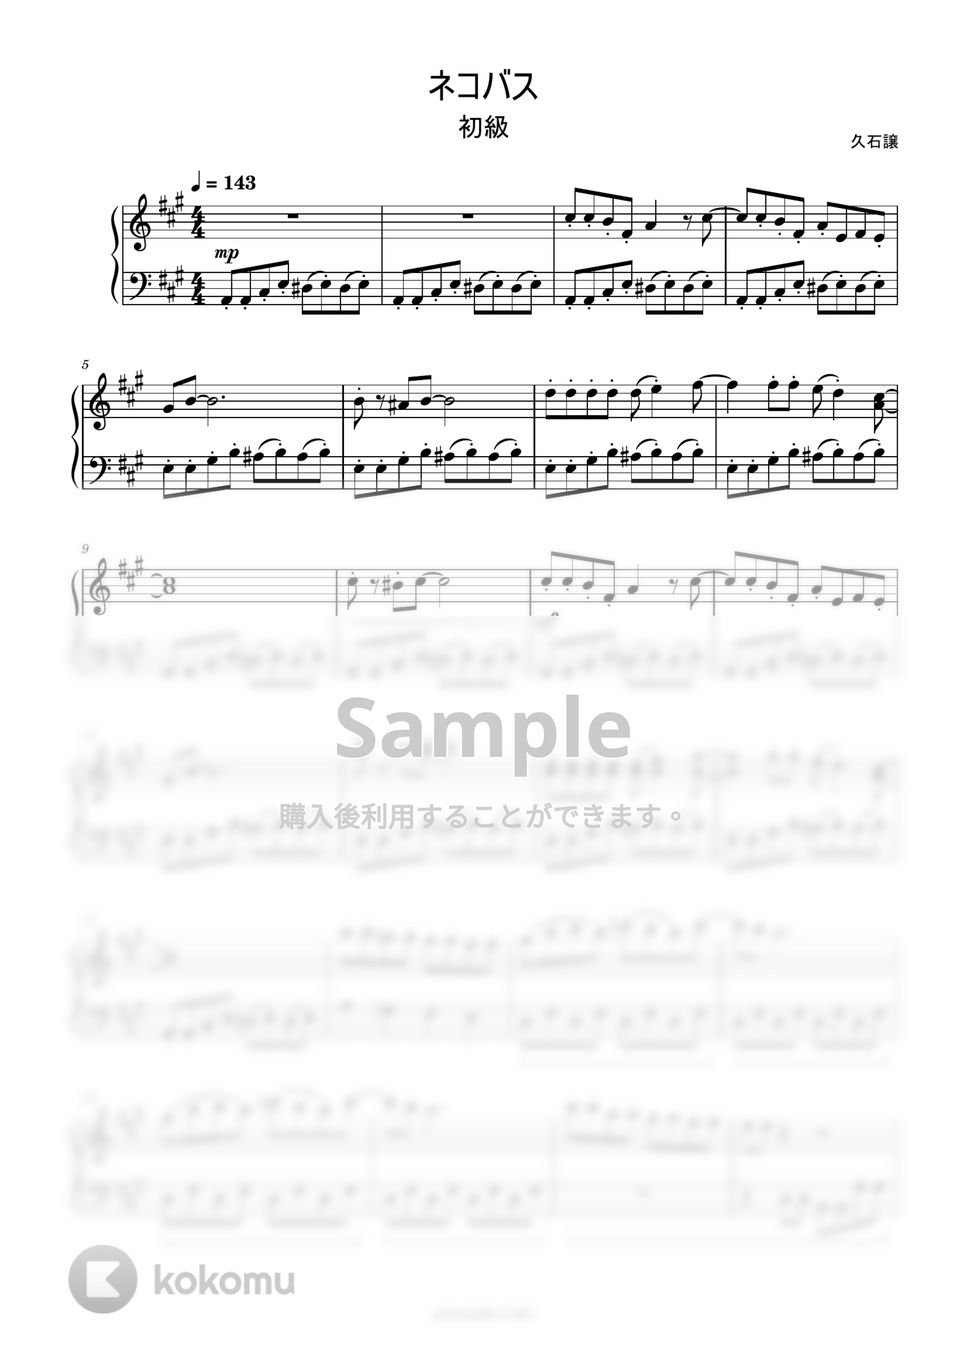 久石譲 - ねこバス (簡単楽譜) by ピアノ塾